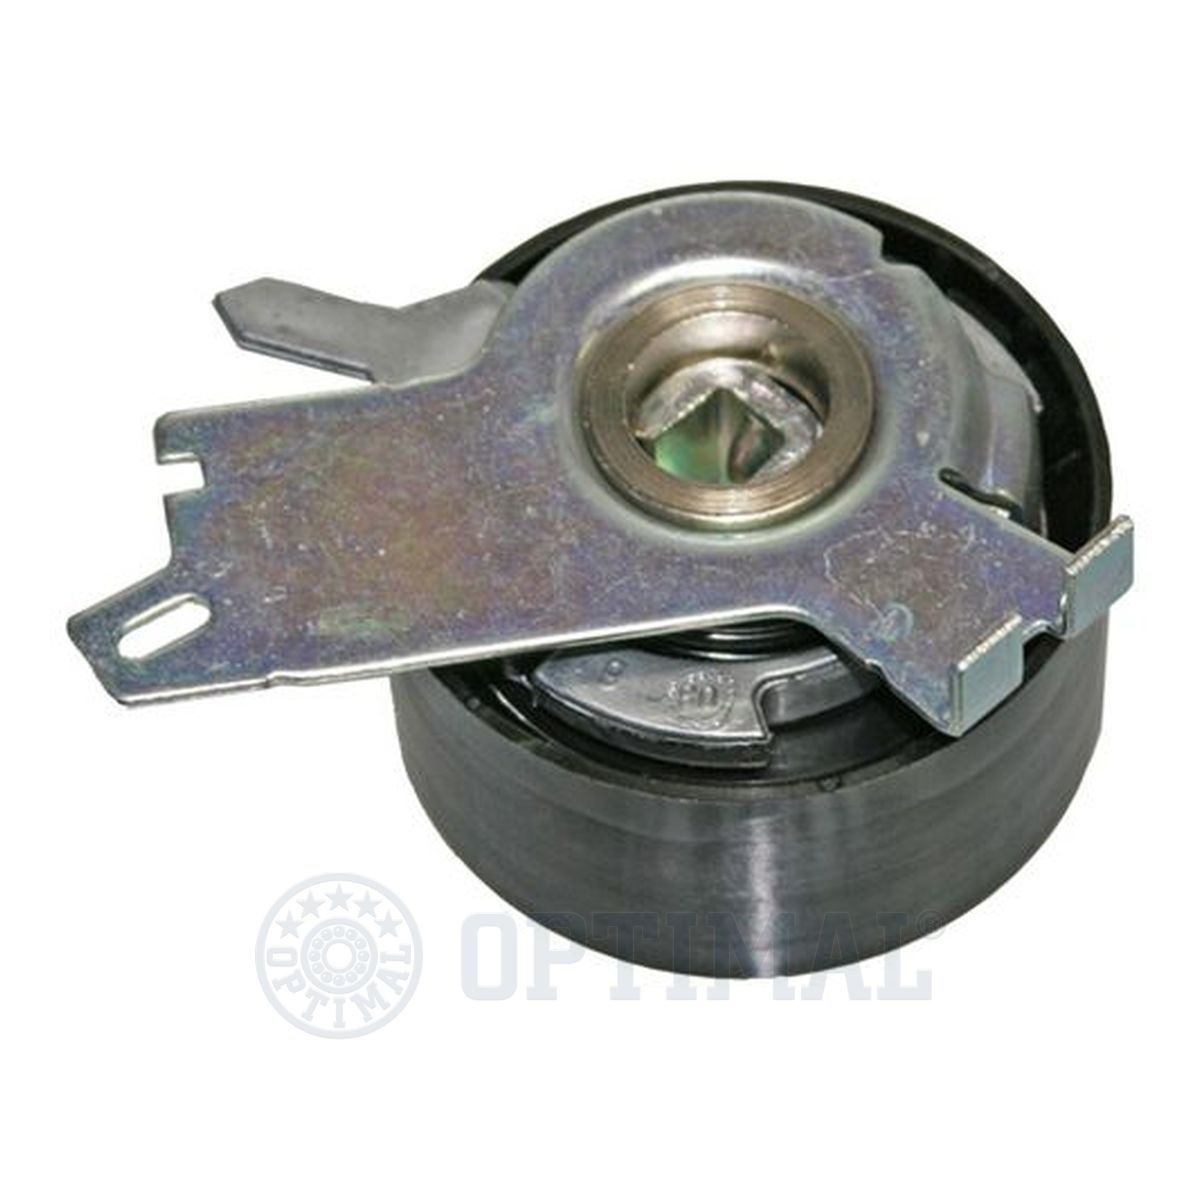 SK-1600 OPTIMAL 0-N1343 Timing belt tensioner pulley 96 53 137 180